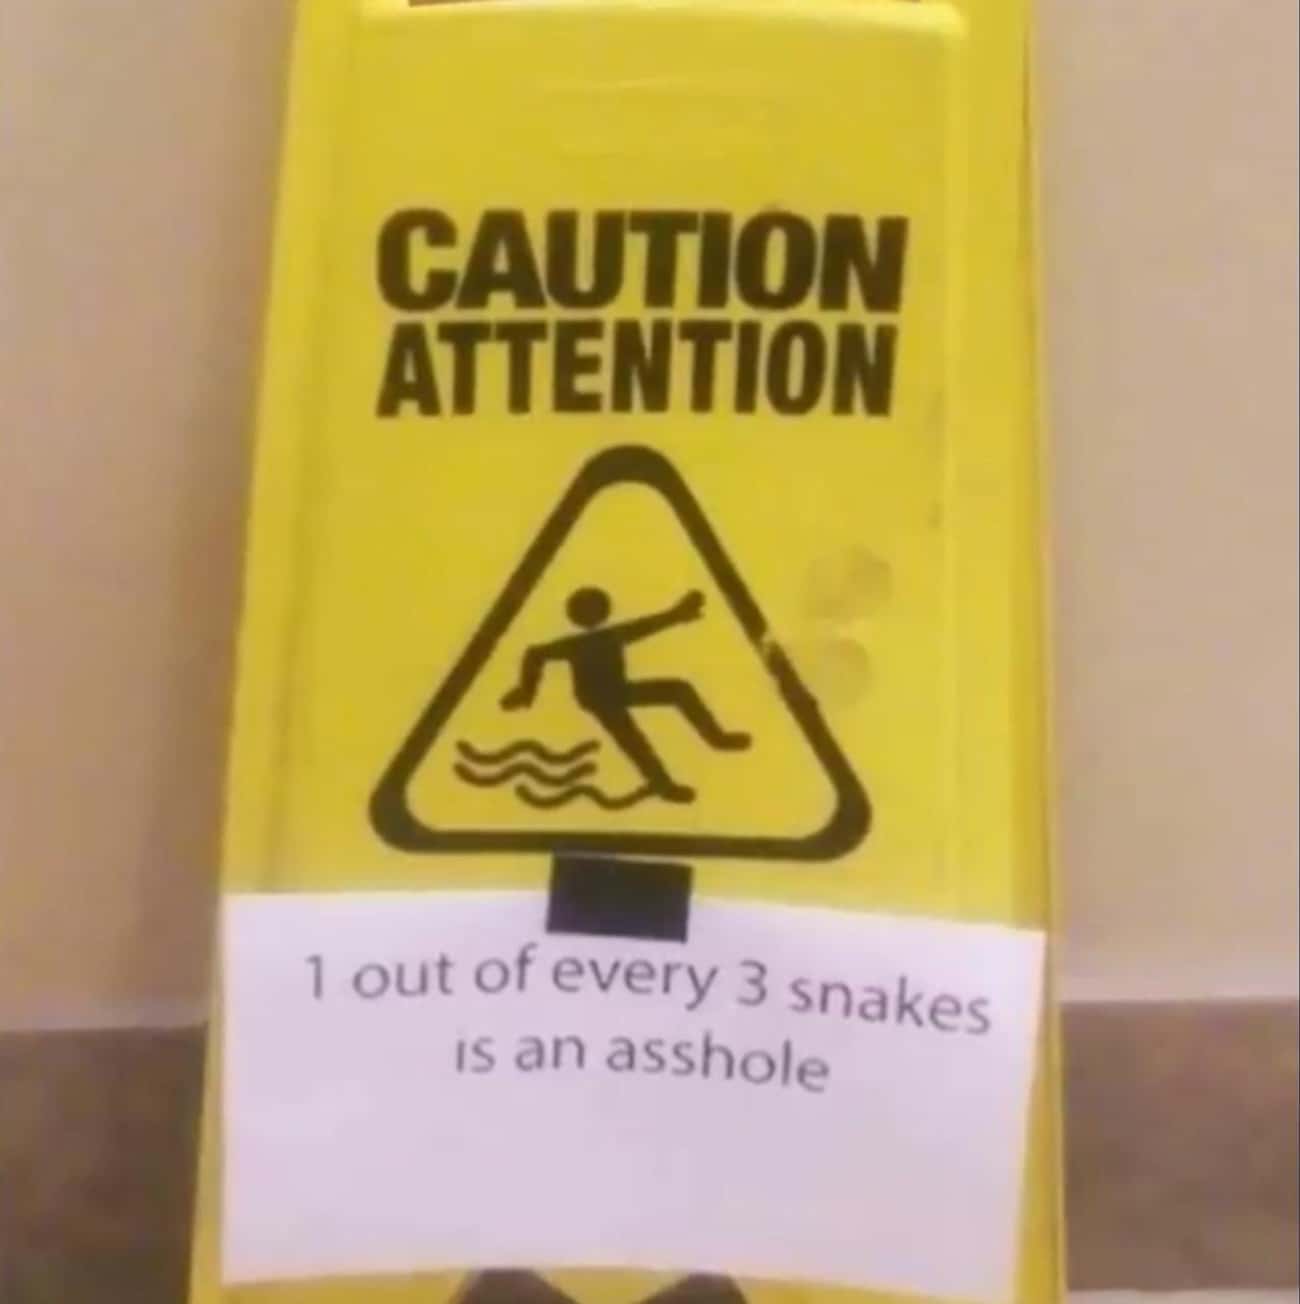 Every Three Snakes